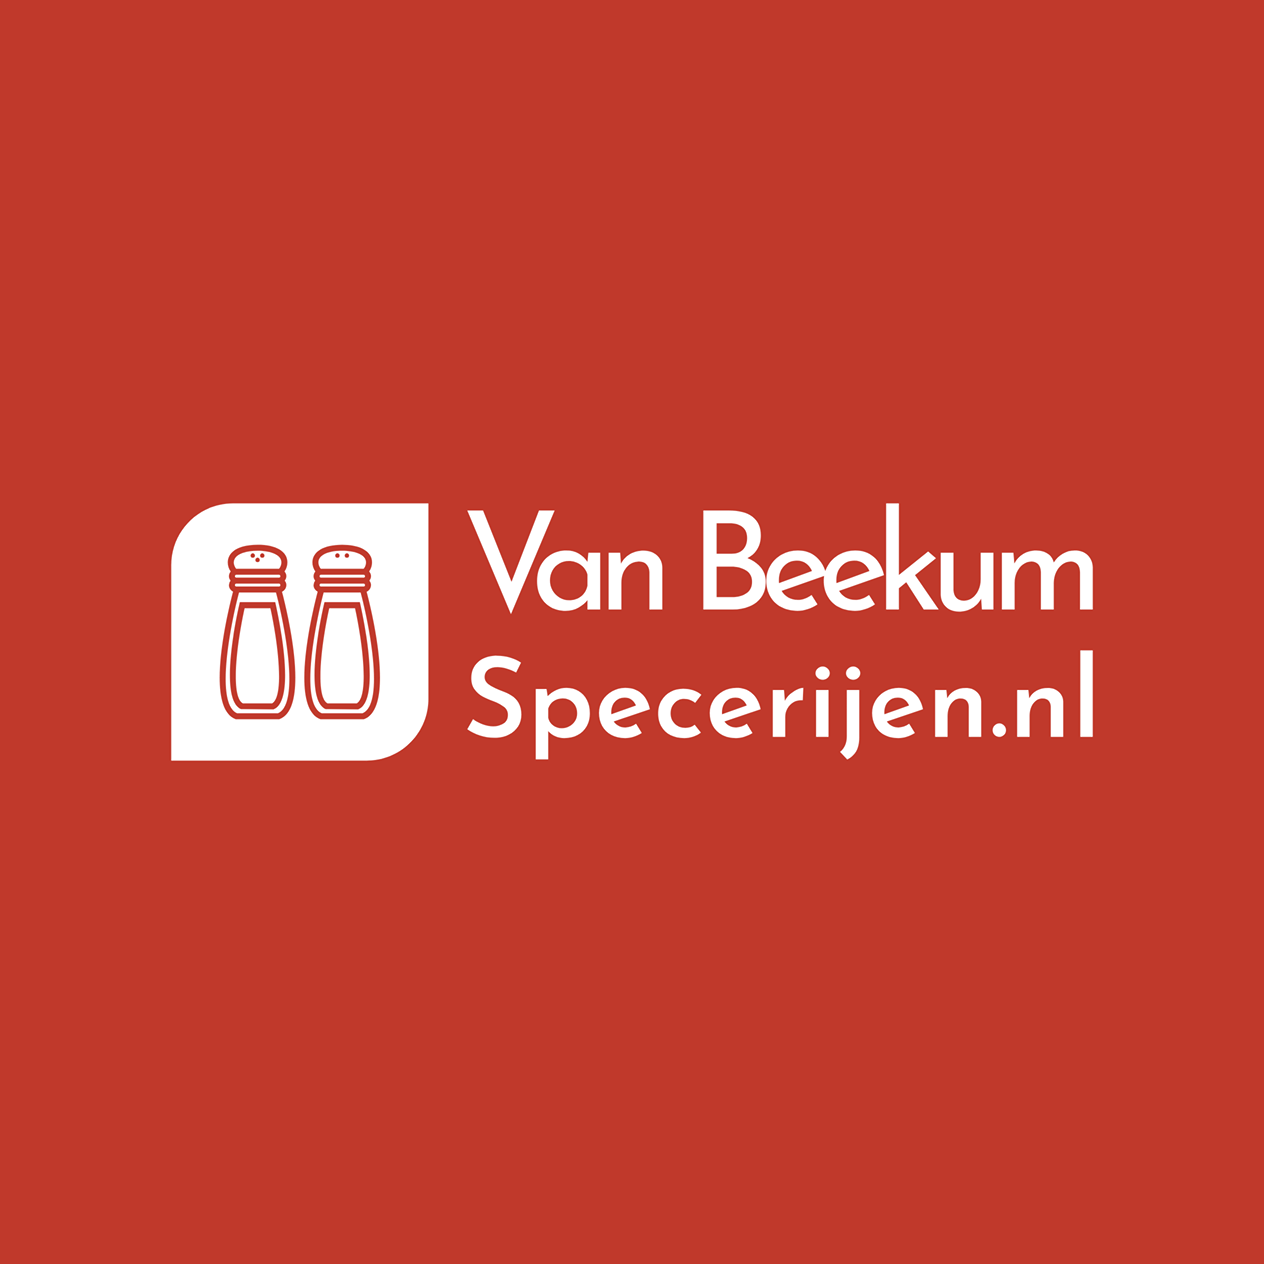 Vanbeekumspecerijen.nl reviews, beoordelingen en ervaringen